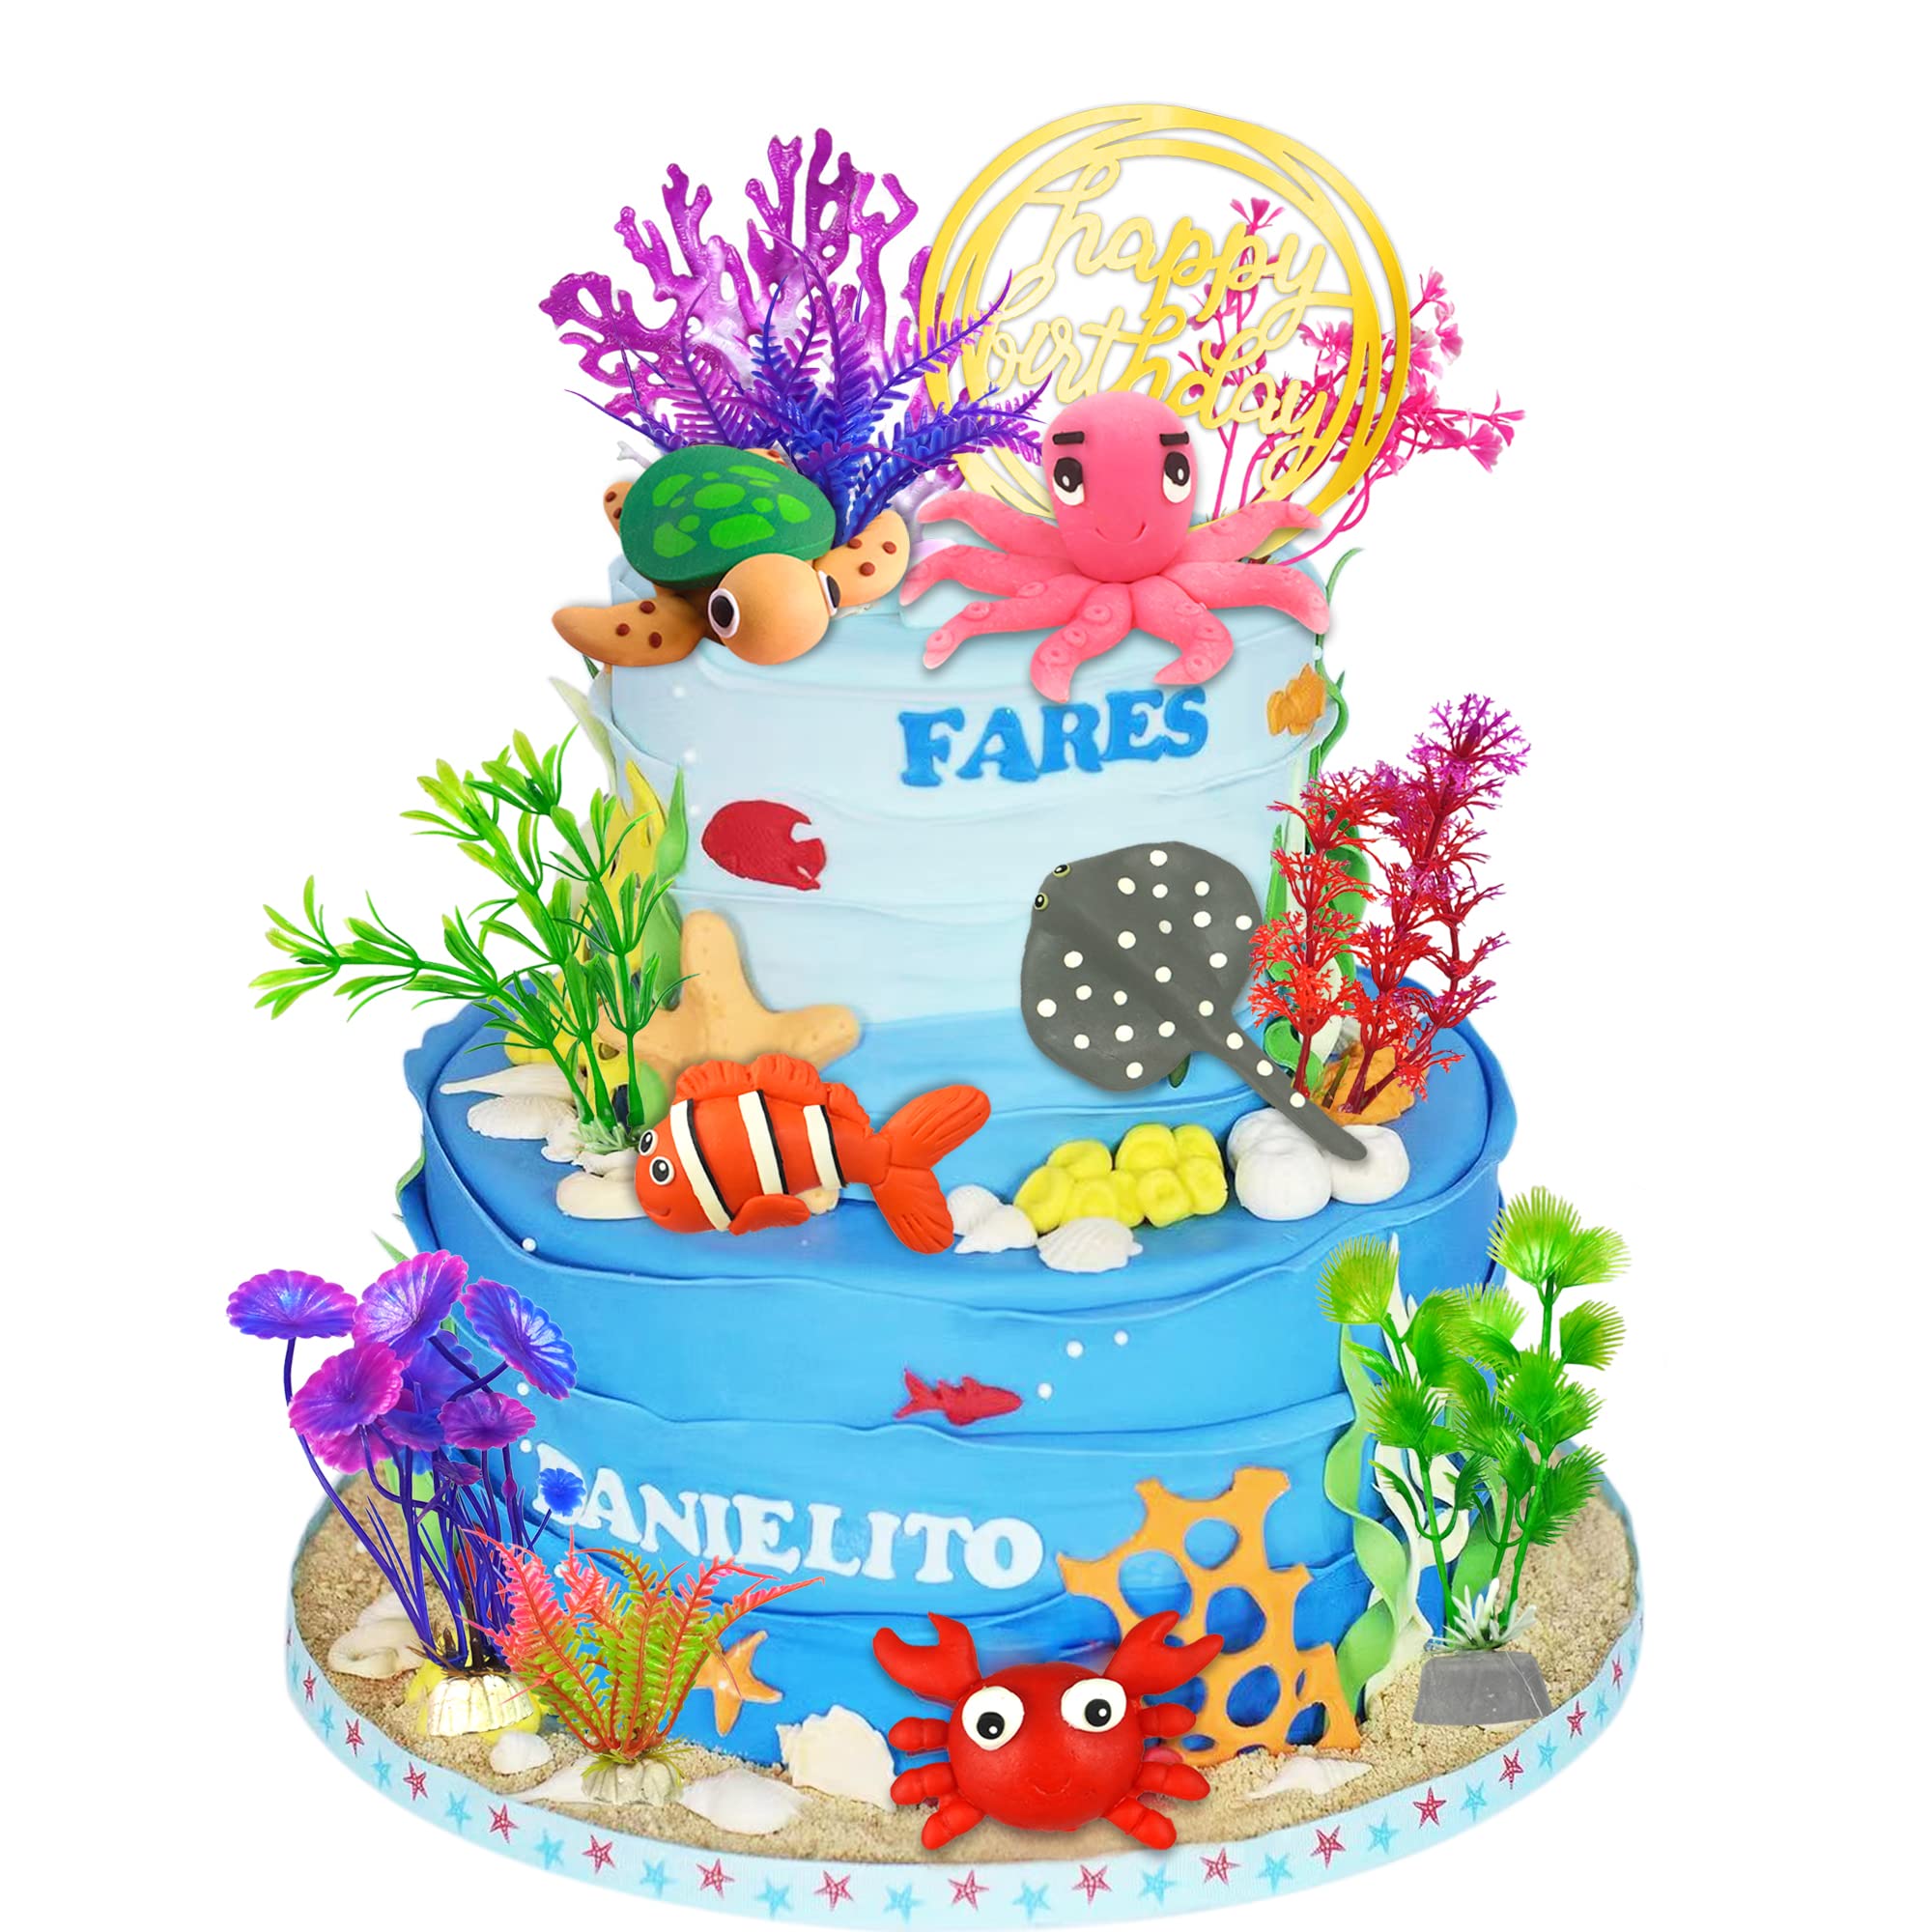 tìm kiếm mẫu bánh cưới biển có trang trí ocean cake decorations nào đẹp và phù hợp?